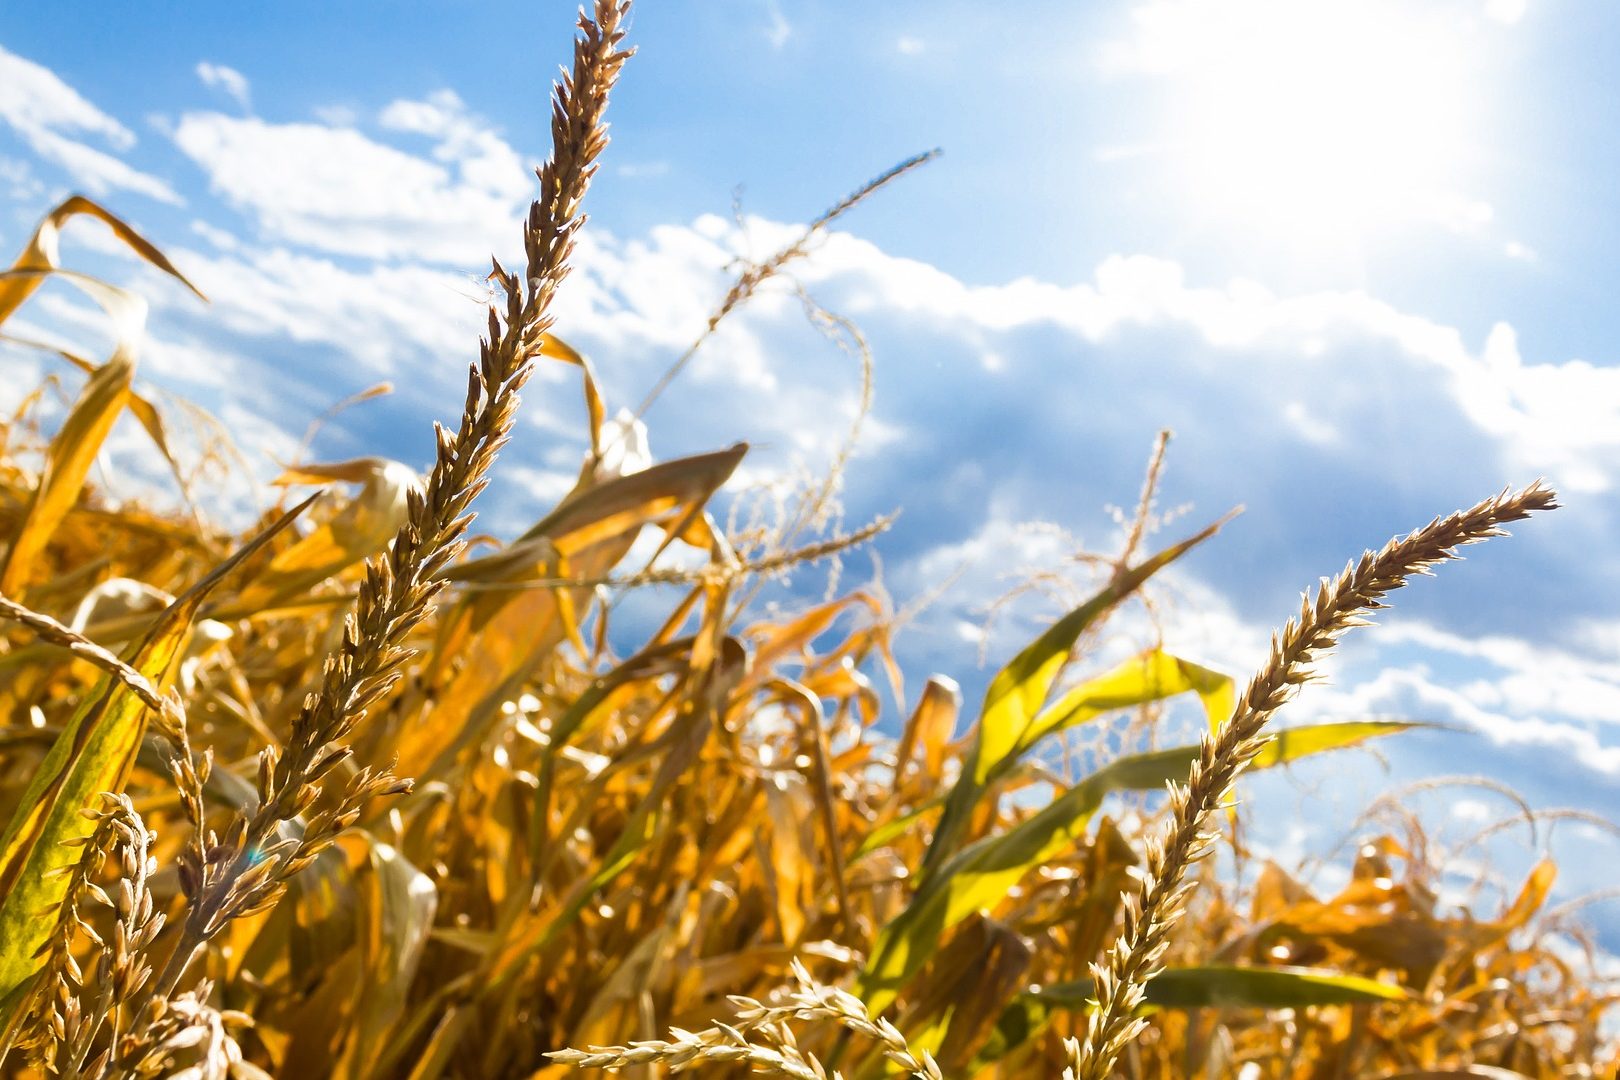 Hitzewellen und damit einhergehende Risiken für Ernten können häufiger werden und gleichzeitig mehrere Hauptanbaugebiete der Nordhalbkugel treffen. © Remaztered Studio | Pixabay.